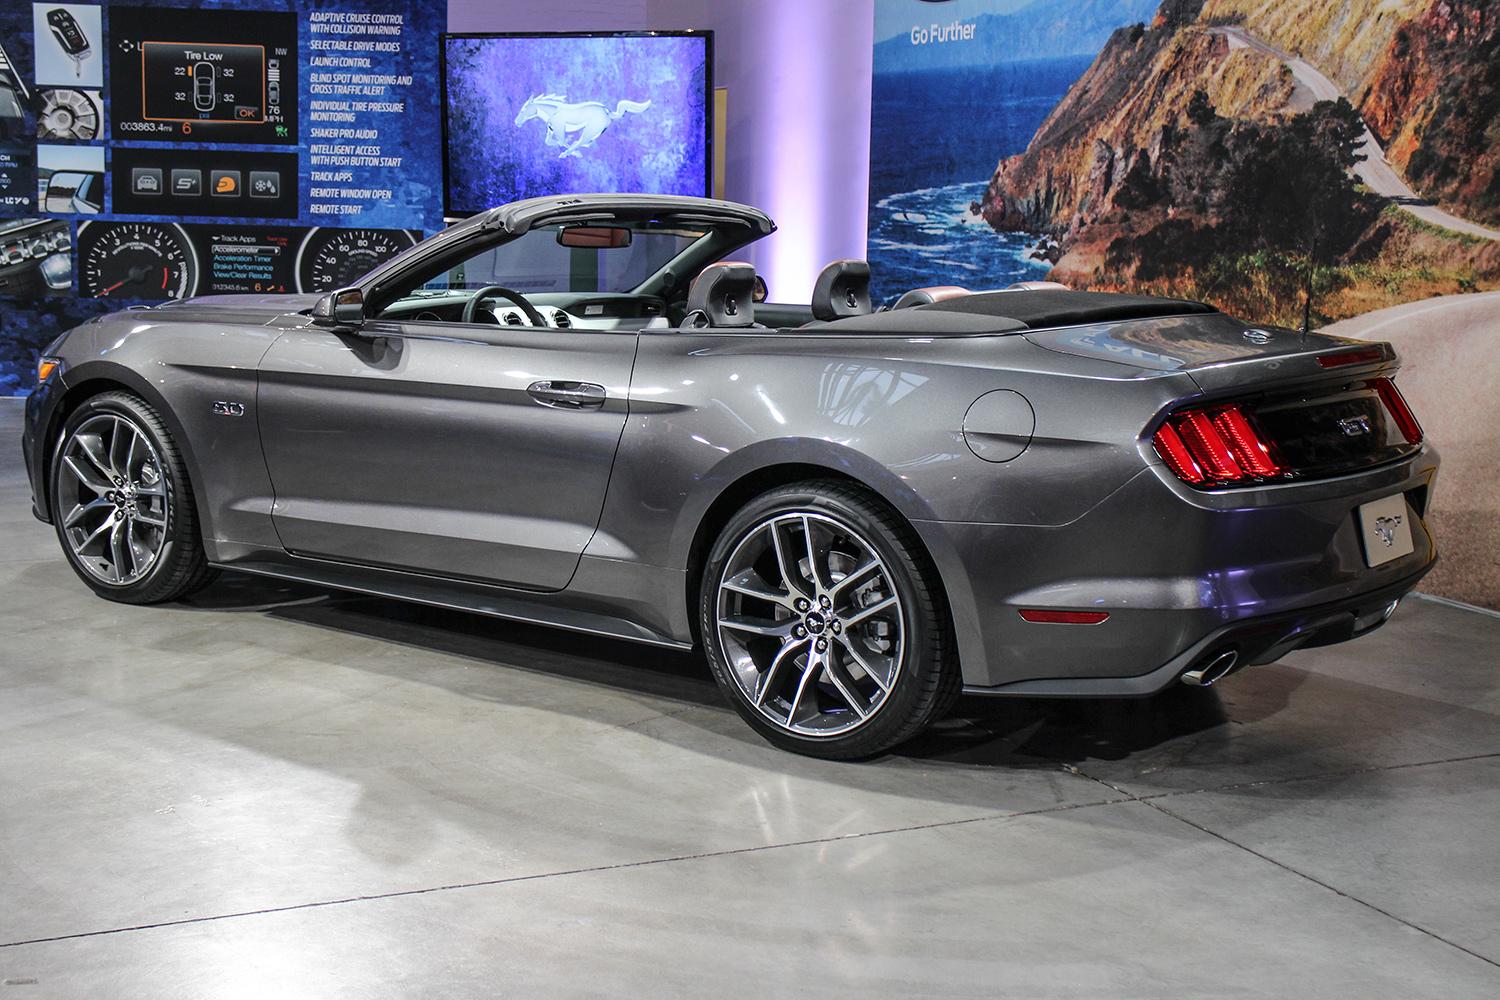 Ford Mustang: Được ví như 'ngựa hoang' của nước Mỹ, tuy nhiên nếu tin đồn 'tăng cân' là chính xác, phiên bản 2015 của Ford Mustang có lẽ sẽ gặp nhiều khó khăn để đánh bại các dòng xe cơ bắp khác và chinh phục người tiêu dùng 